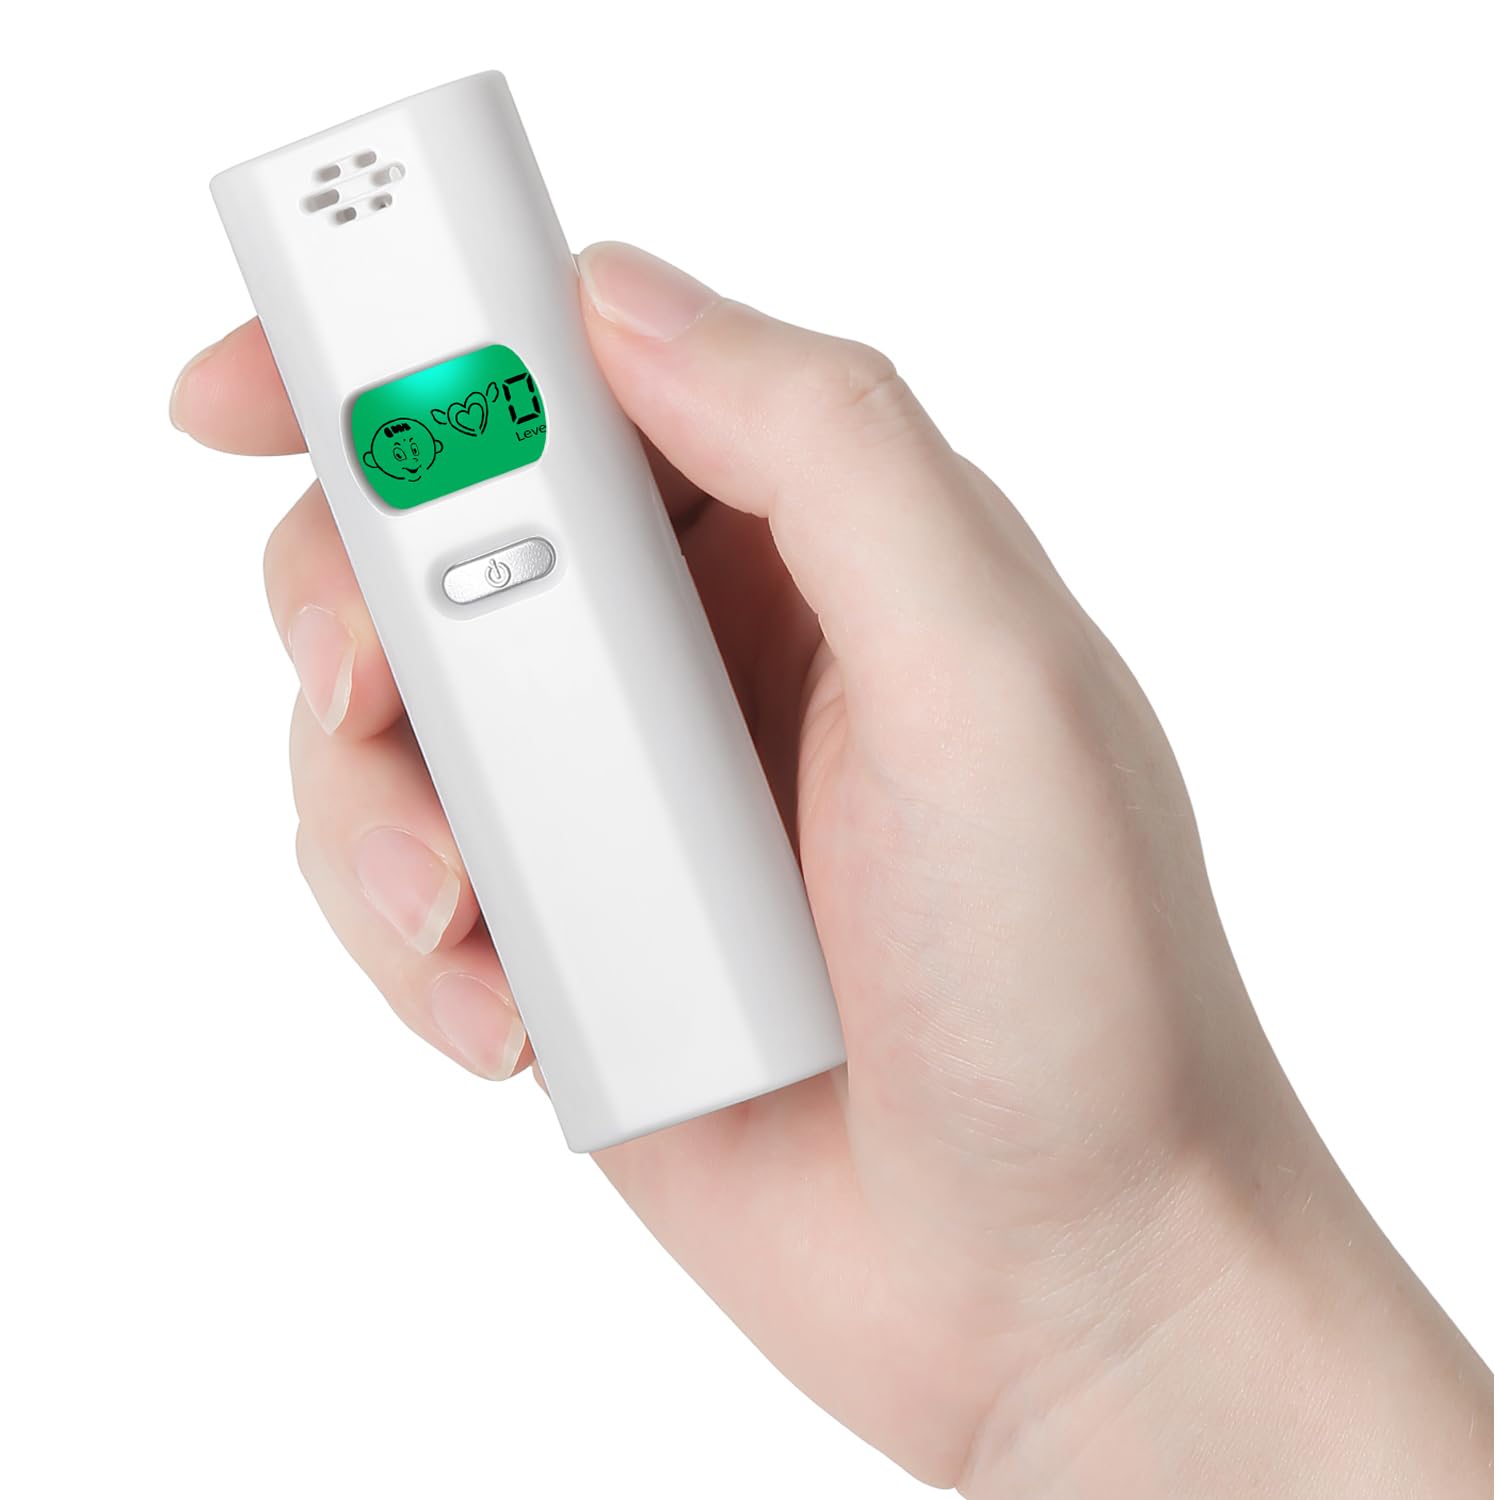 口臭計測器 口臭分析器 ブレスチェッカー 口臭チッカー ニオイ検出器 5段階口臭計測 レベル表示 口臭モニタツール 自…